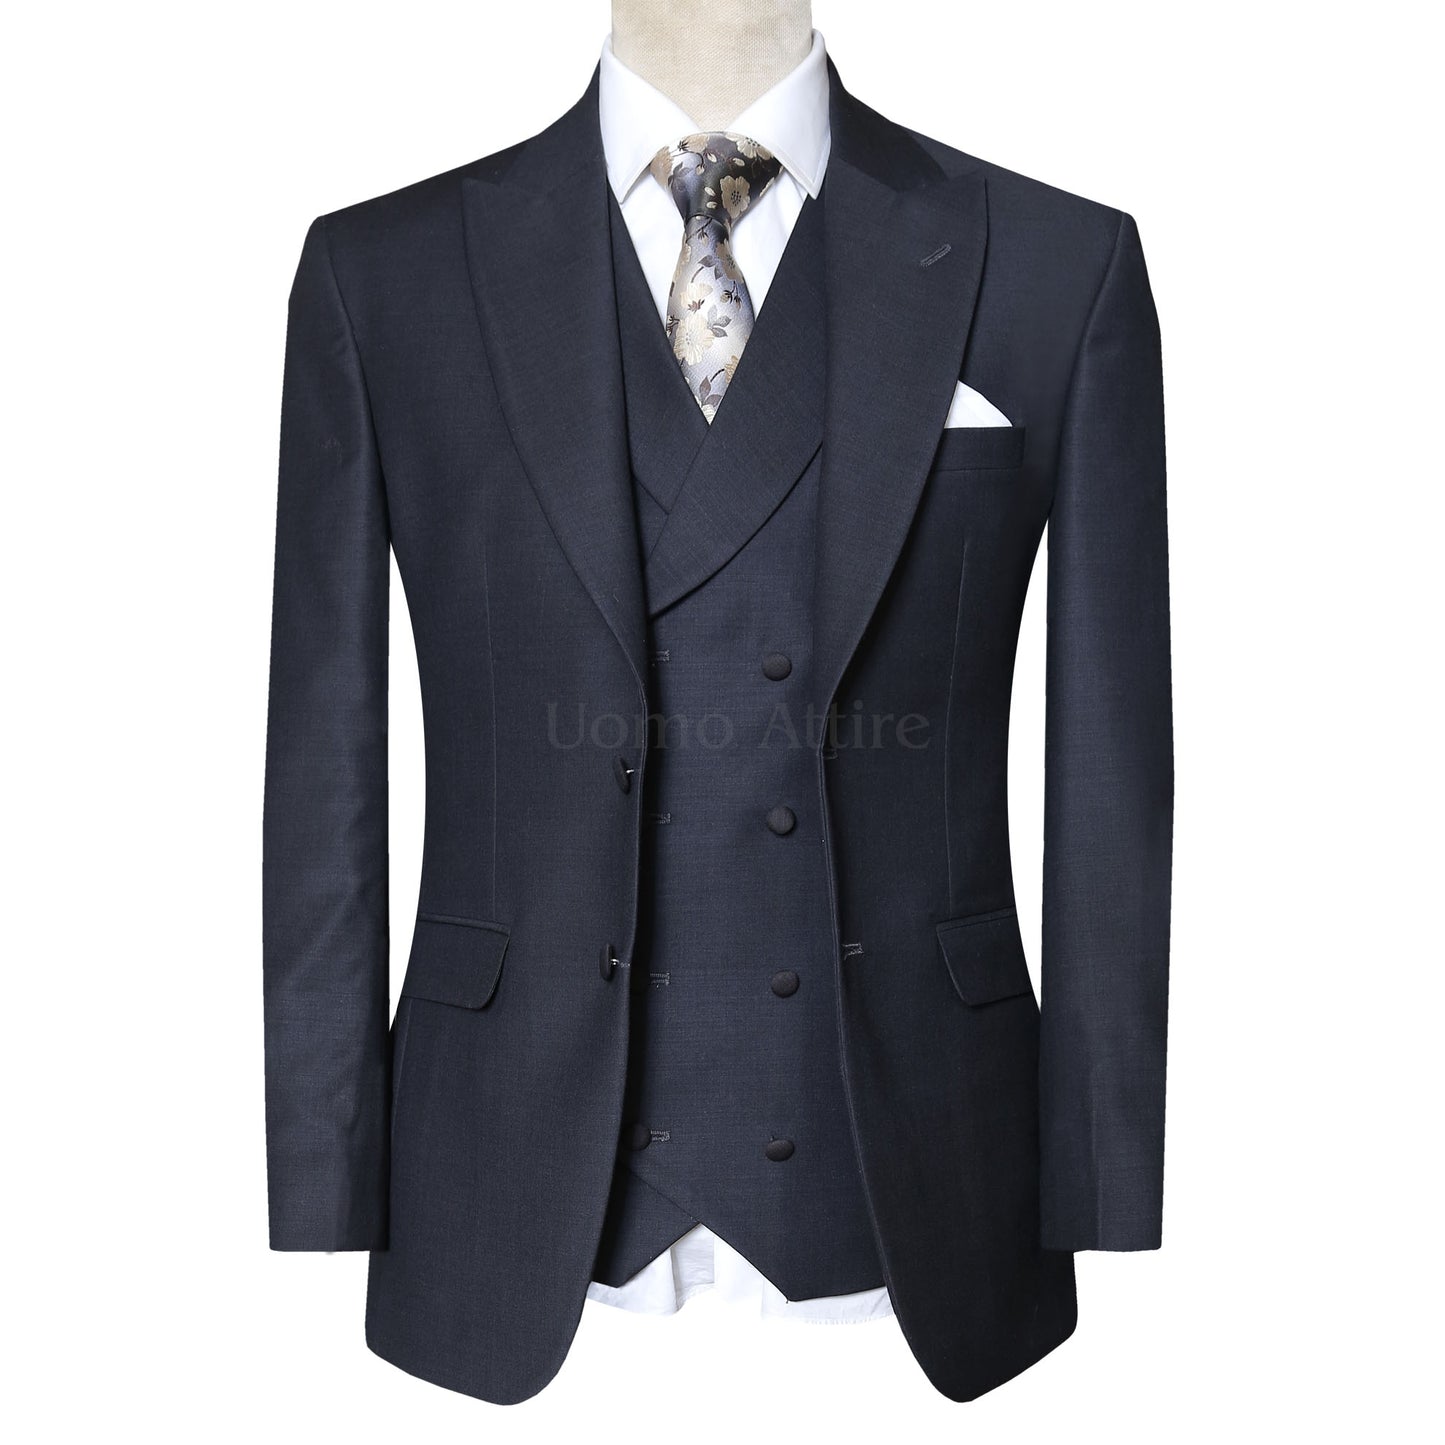 Mens Suits : Style Men's Suits | Men's Blazer Online